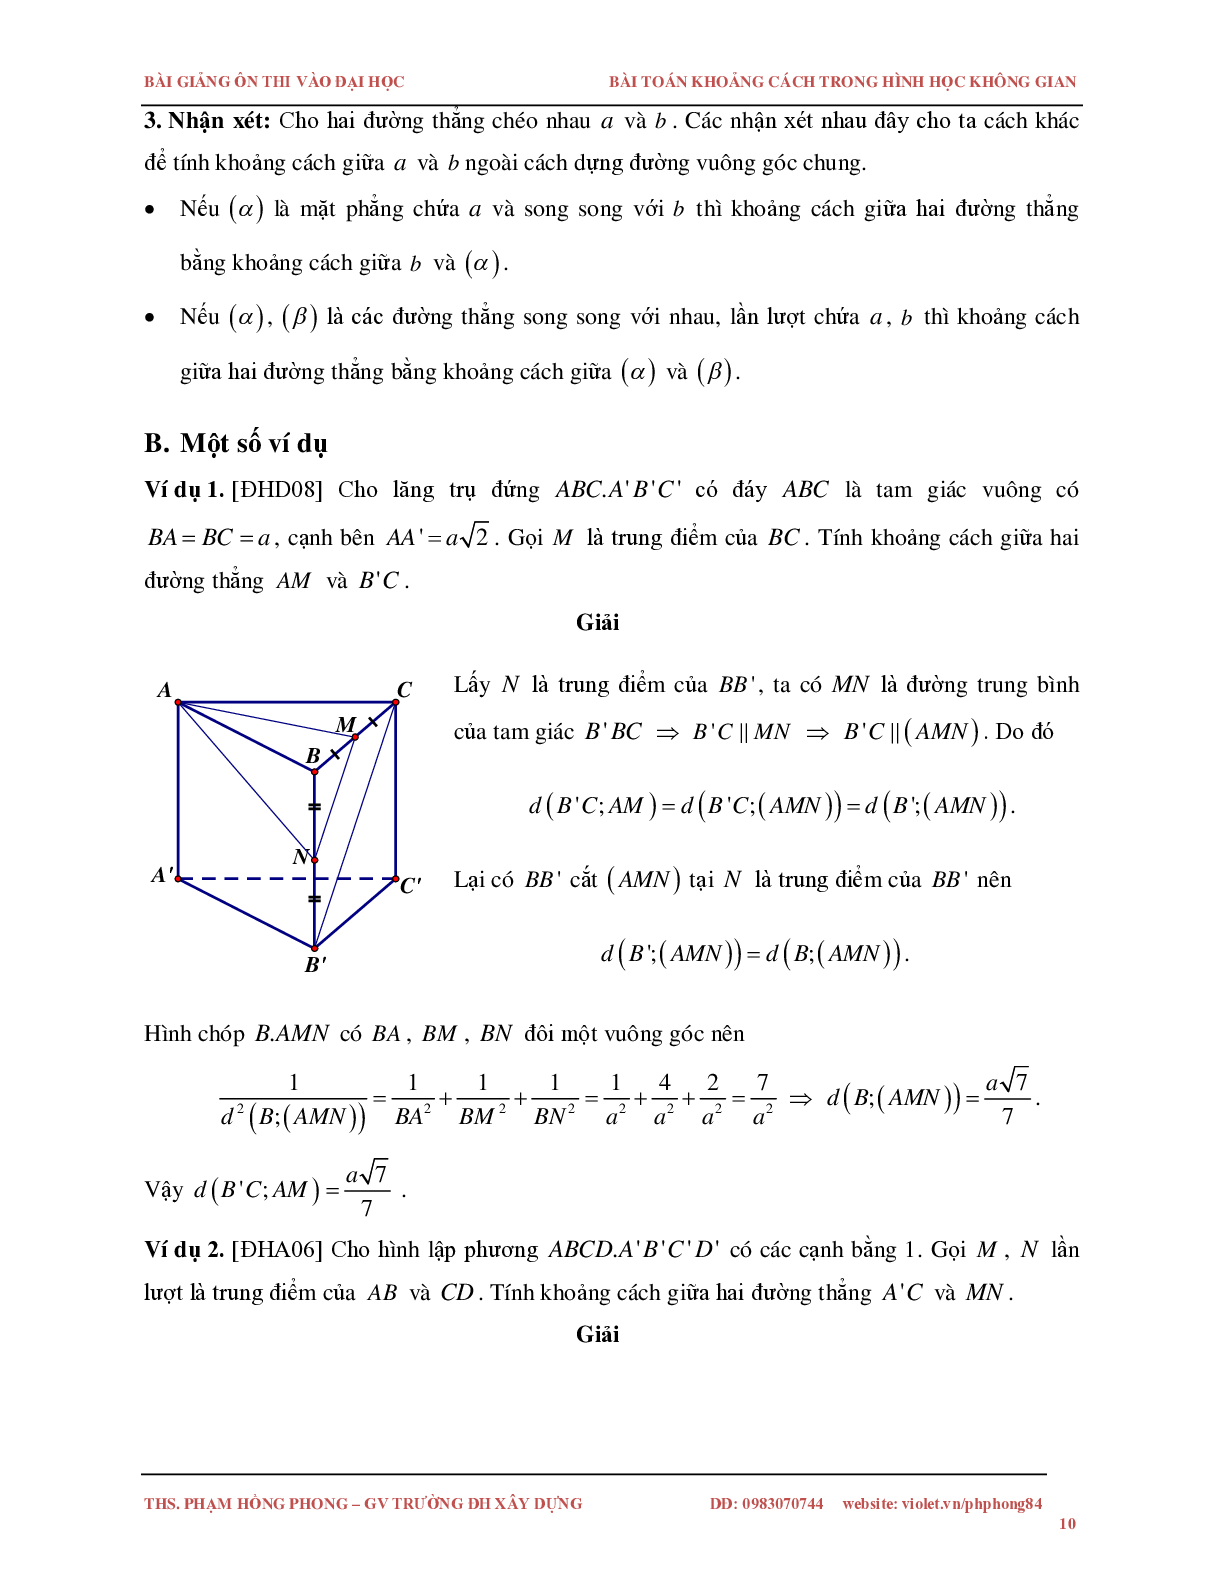 Bài toán về khoảng cách trong không gian (trang 10)